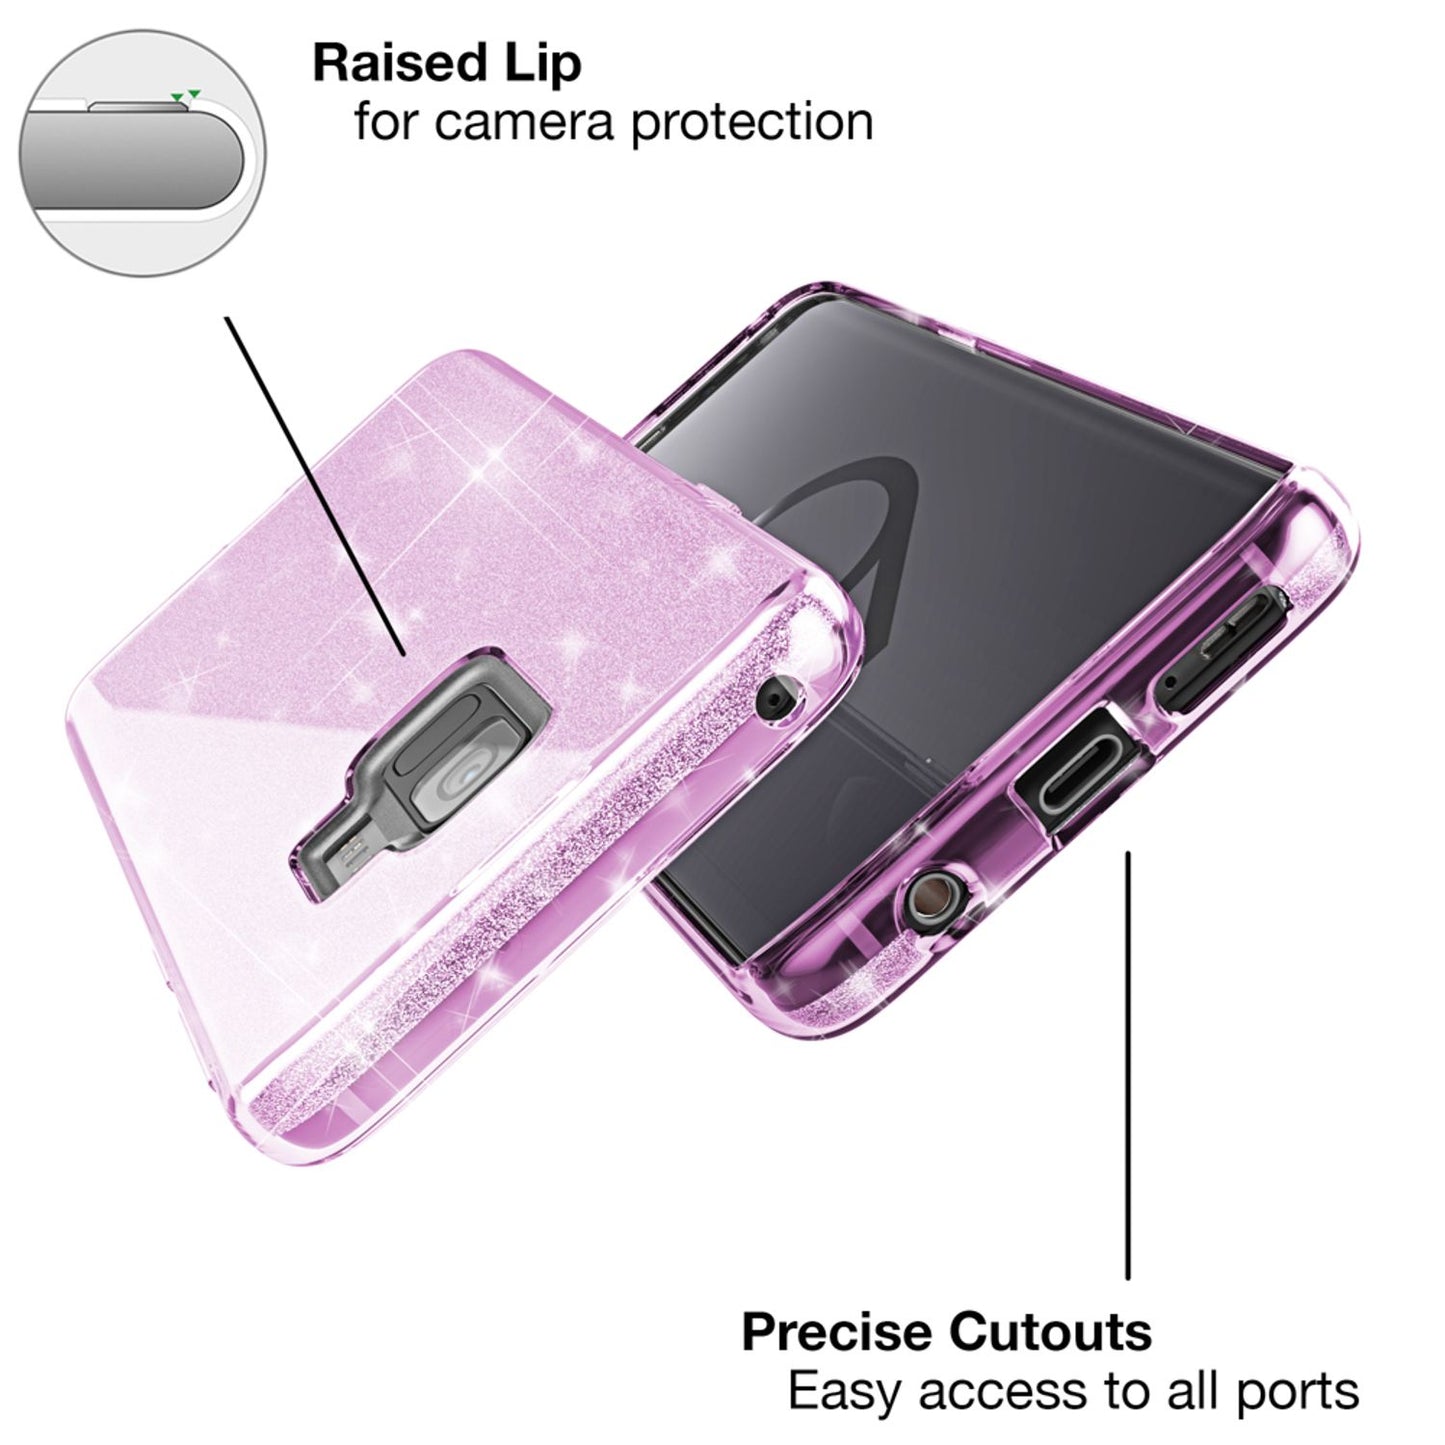 NALIA Handy Hülle für Samsung Galaxy S9 Plus, Glitzer Case Cover Tasche Bumper